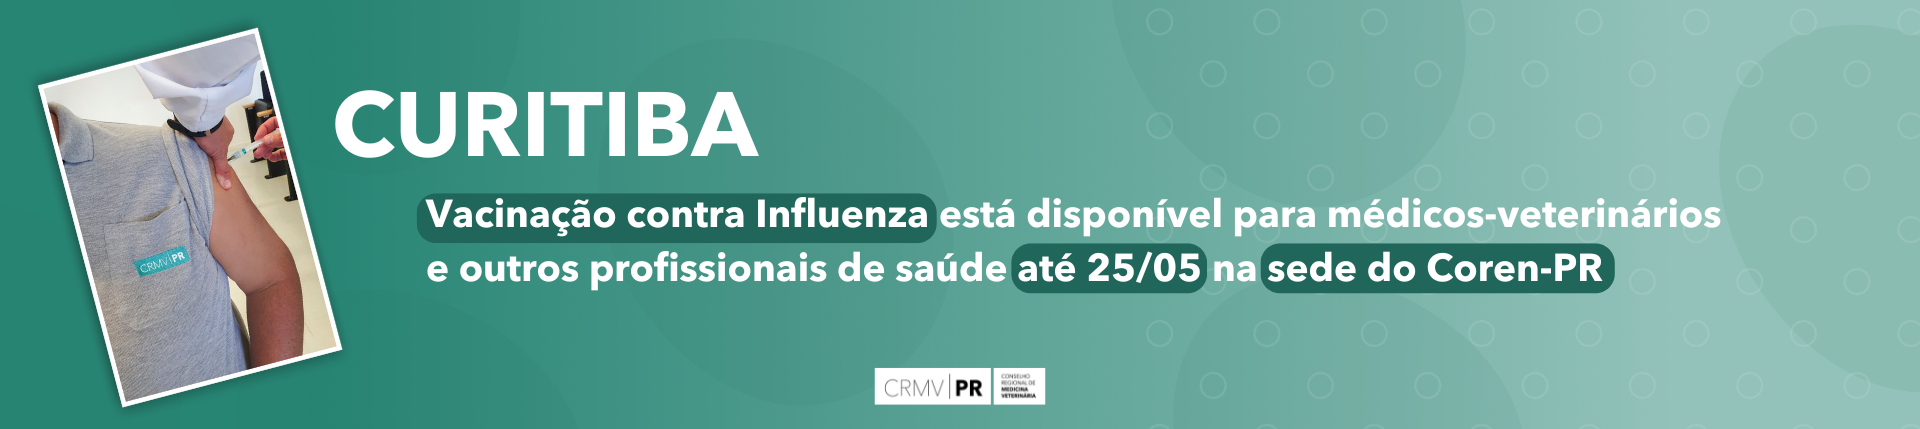 Curitiba: Vacinação contra Influenza está disponível para médicos-veterinários e outros profissionais de saúde na sede do Coren-PR